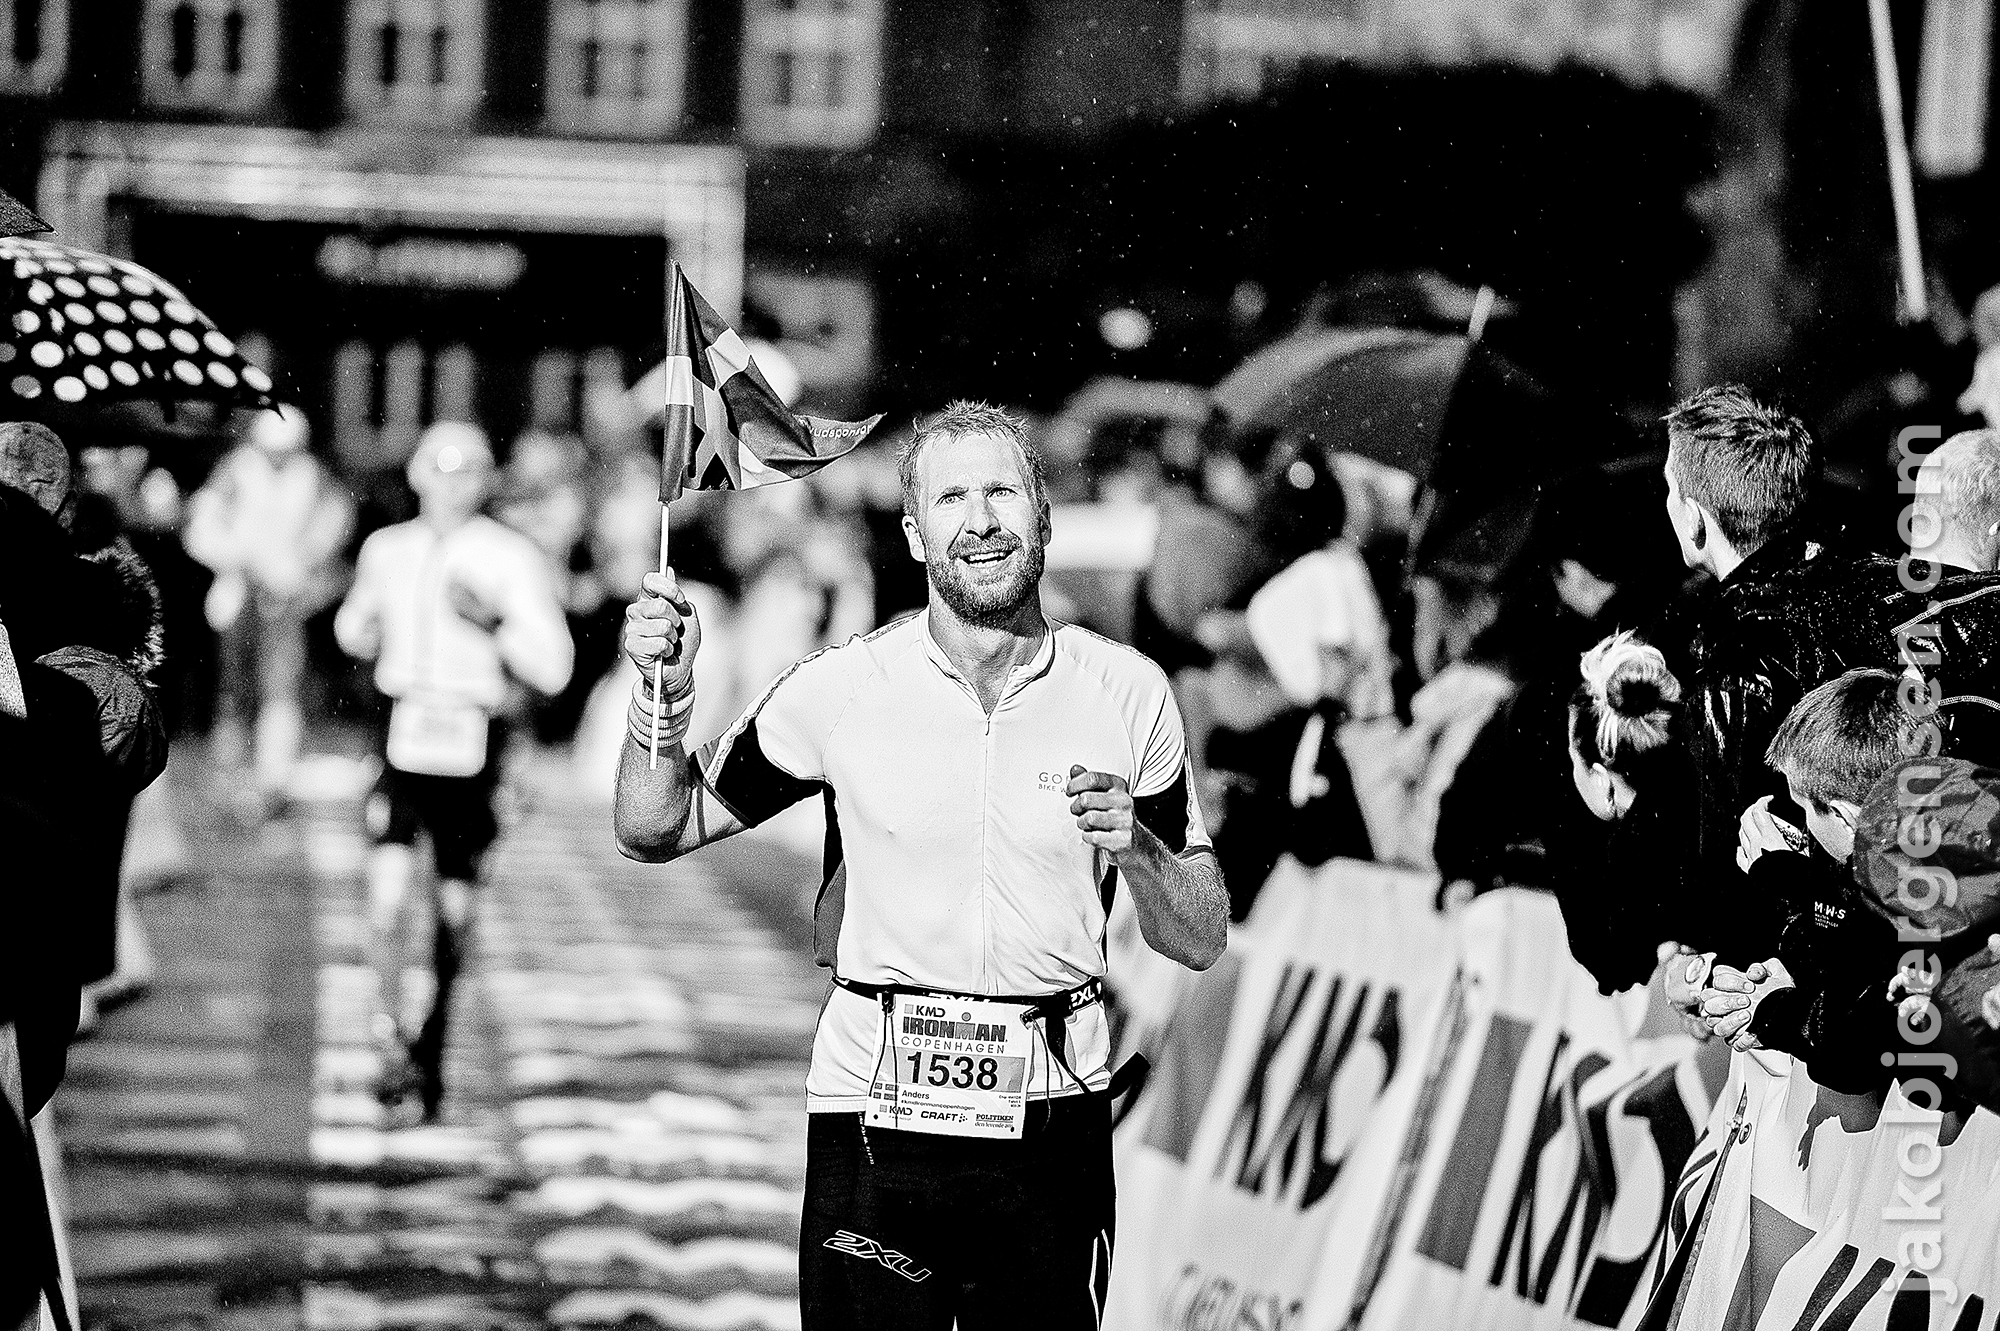 24-08-14_KMD Ironman Copenhagen 2014_0037.JPG